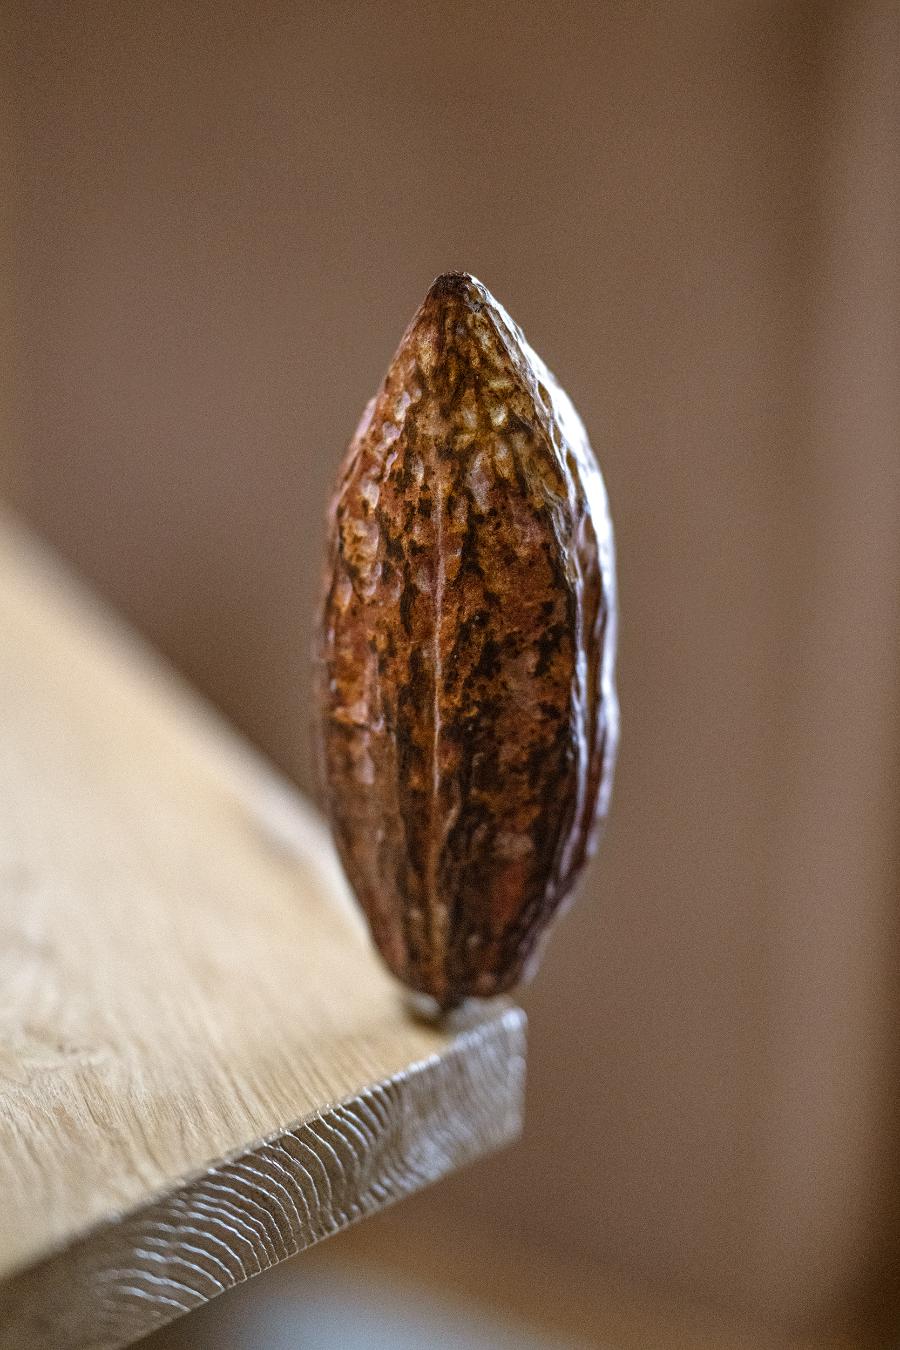 Owoc kakaowca. To w nim w białej pulpie ukryte są ziarna, z których powstaje kakao. (Fot. Michał Leja)